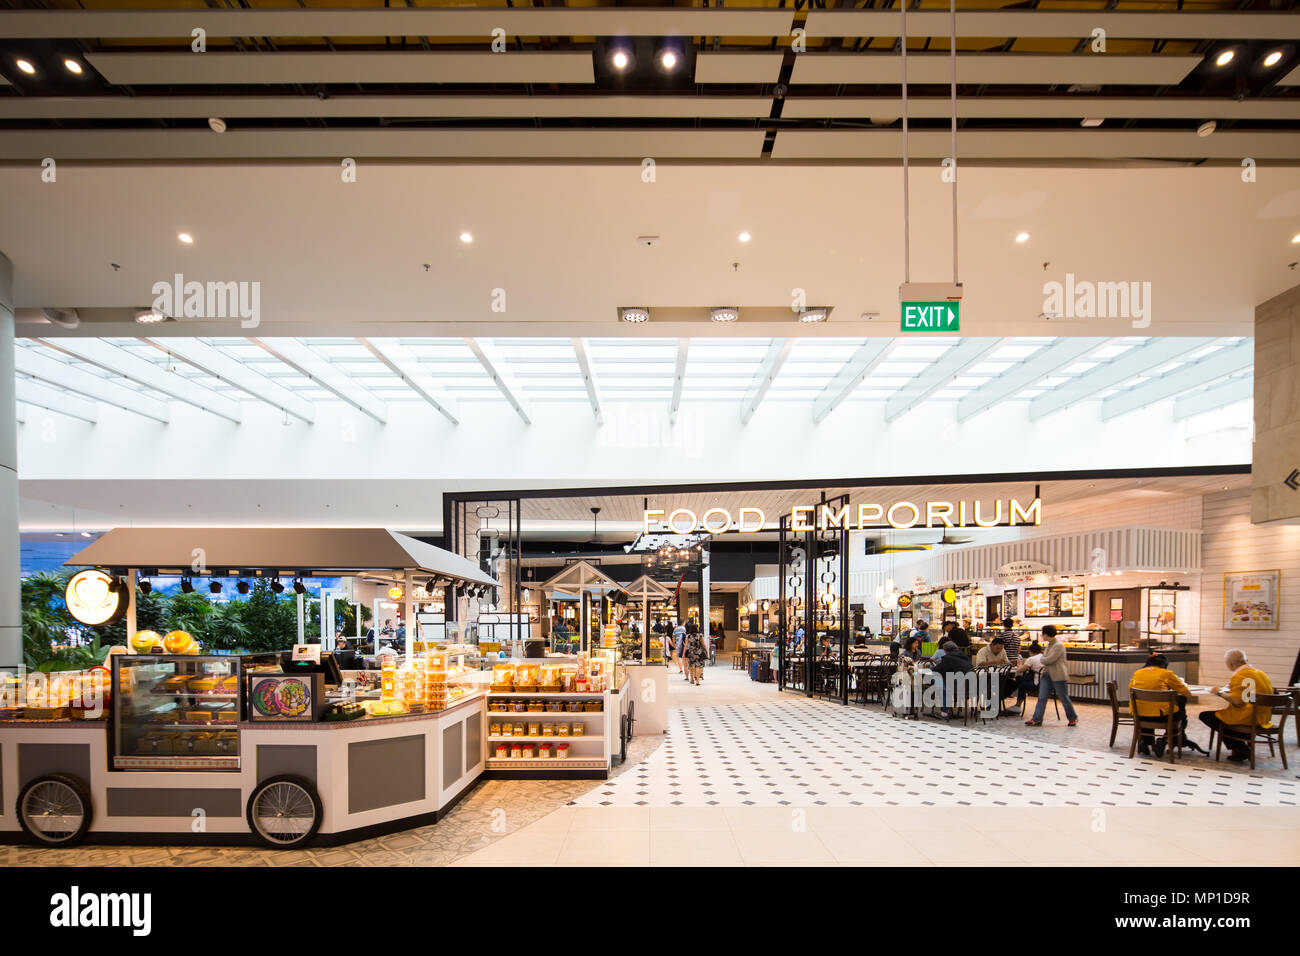 Innenarchitektur des Eingangs des Food Emporium, die Leute können frei gehen, um ihren Lieblingsstand für eine warme Mahlzeit zu wählen. Flughafen Singapur Terminal 4. Stockfoto